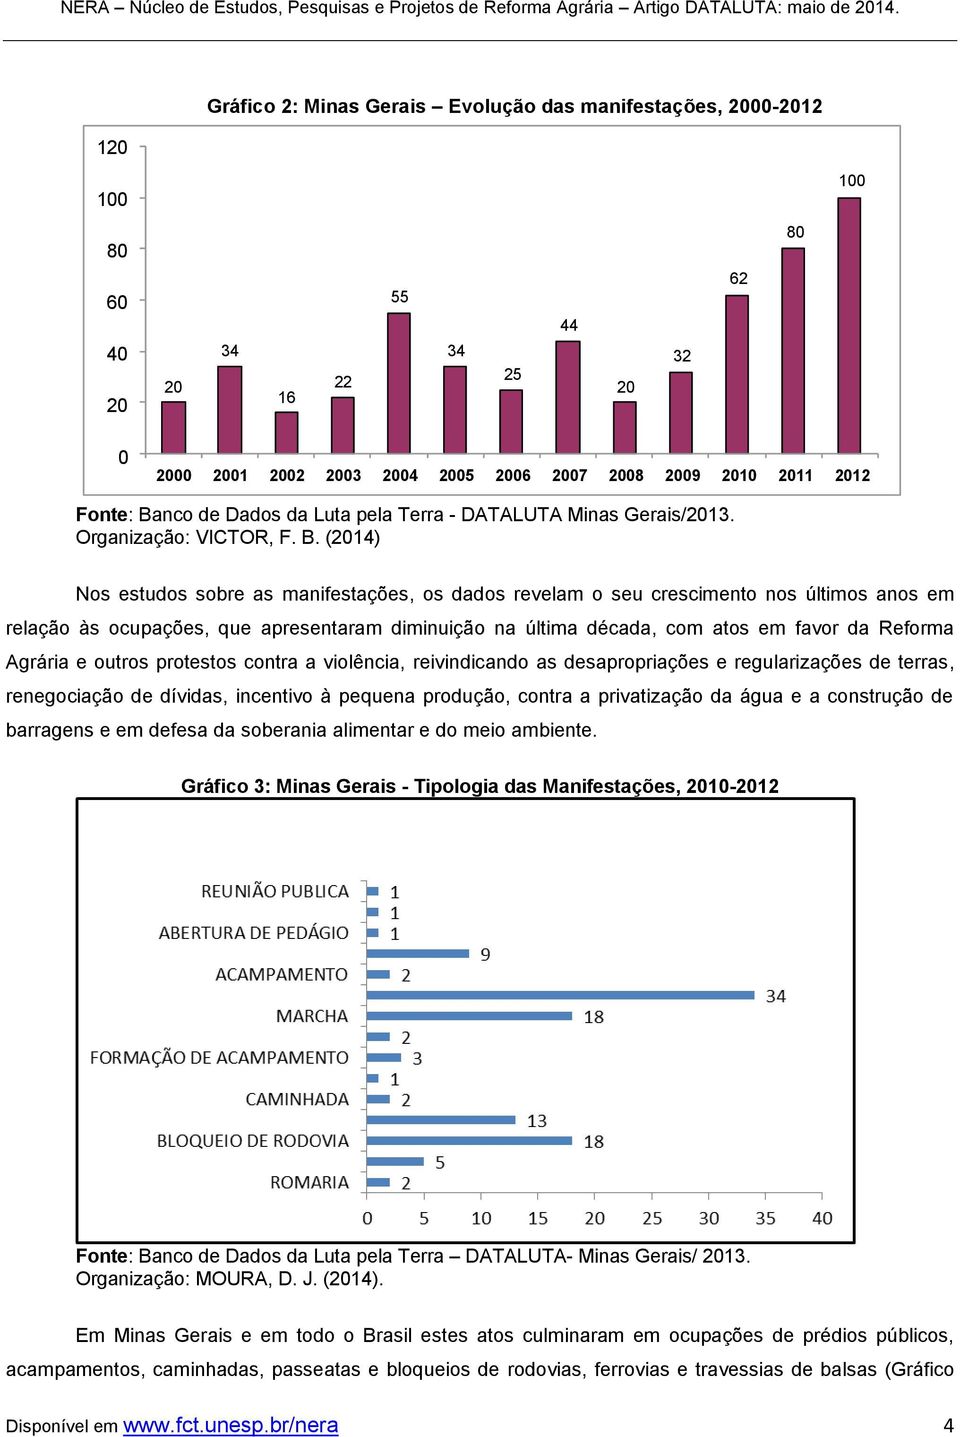 (2014) Nos estudos sobre as manifestações, os dados revelam o seu crescimento nos últimos anos em relação às ocupações, que apresentaram diminuição na última década, com atos em favor da Reforma